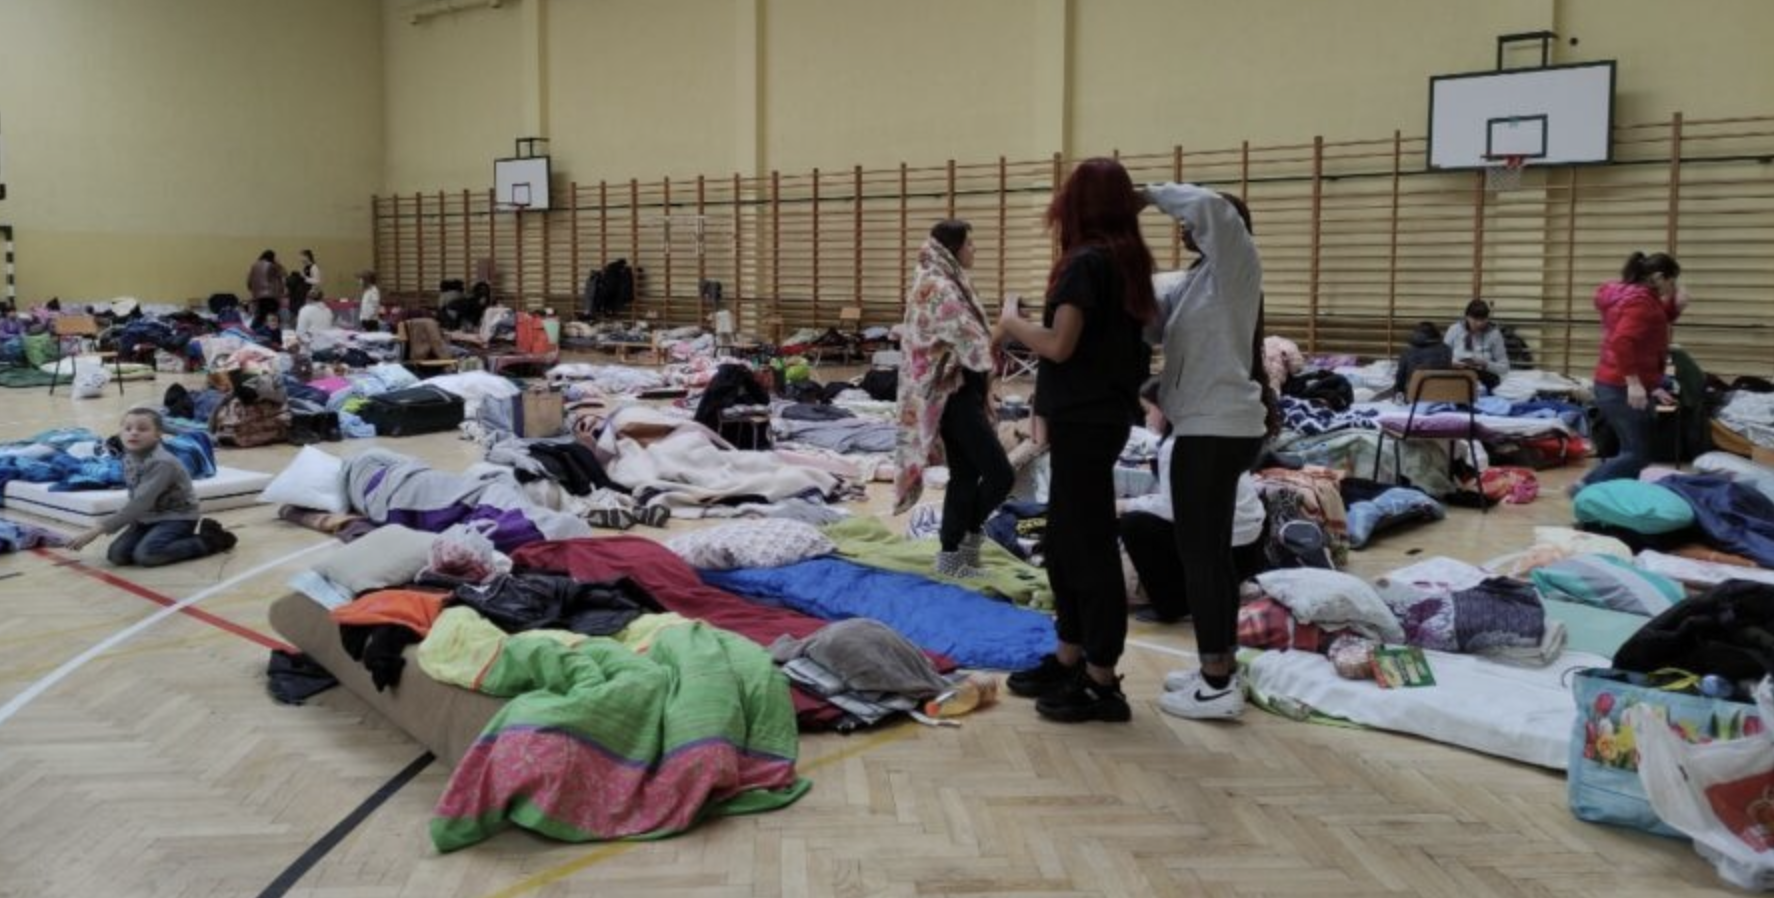 우크라이나 피란민들이 고등학교 체육관에서 임시거처로 지내는 모습, 마룻바닥에 얇은 매트리스를 짤고 담요를 덮고 누워있다.